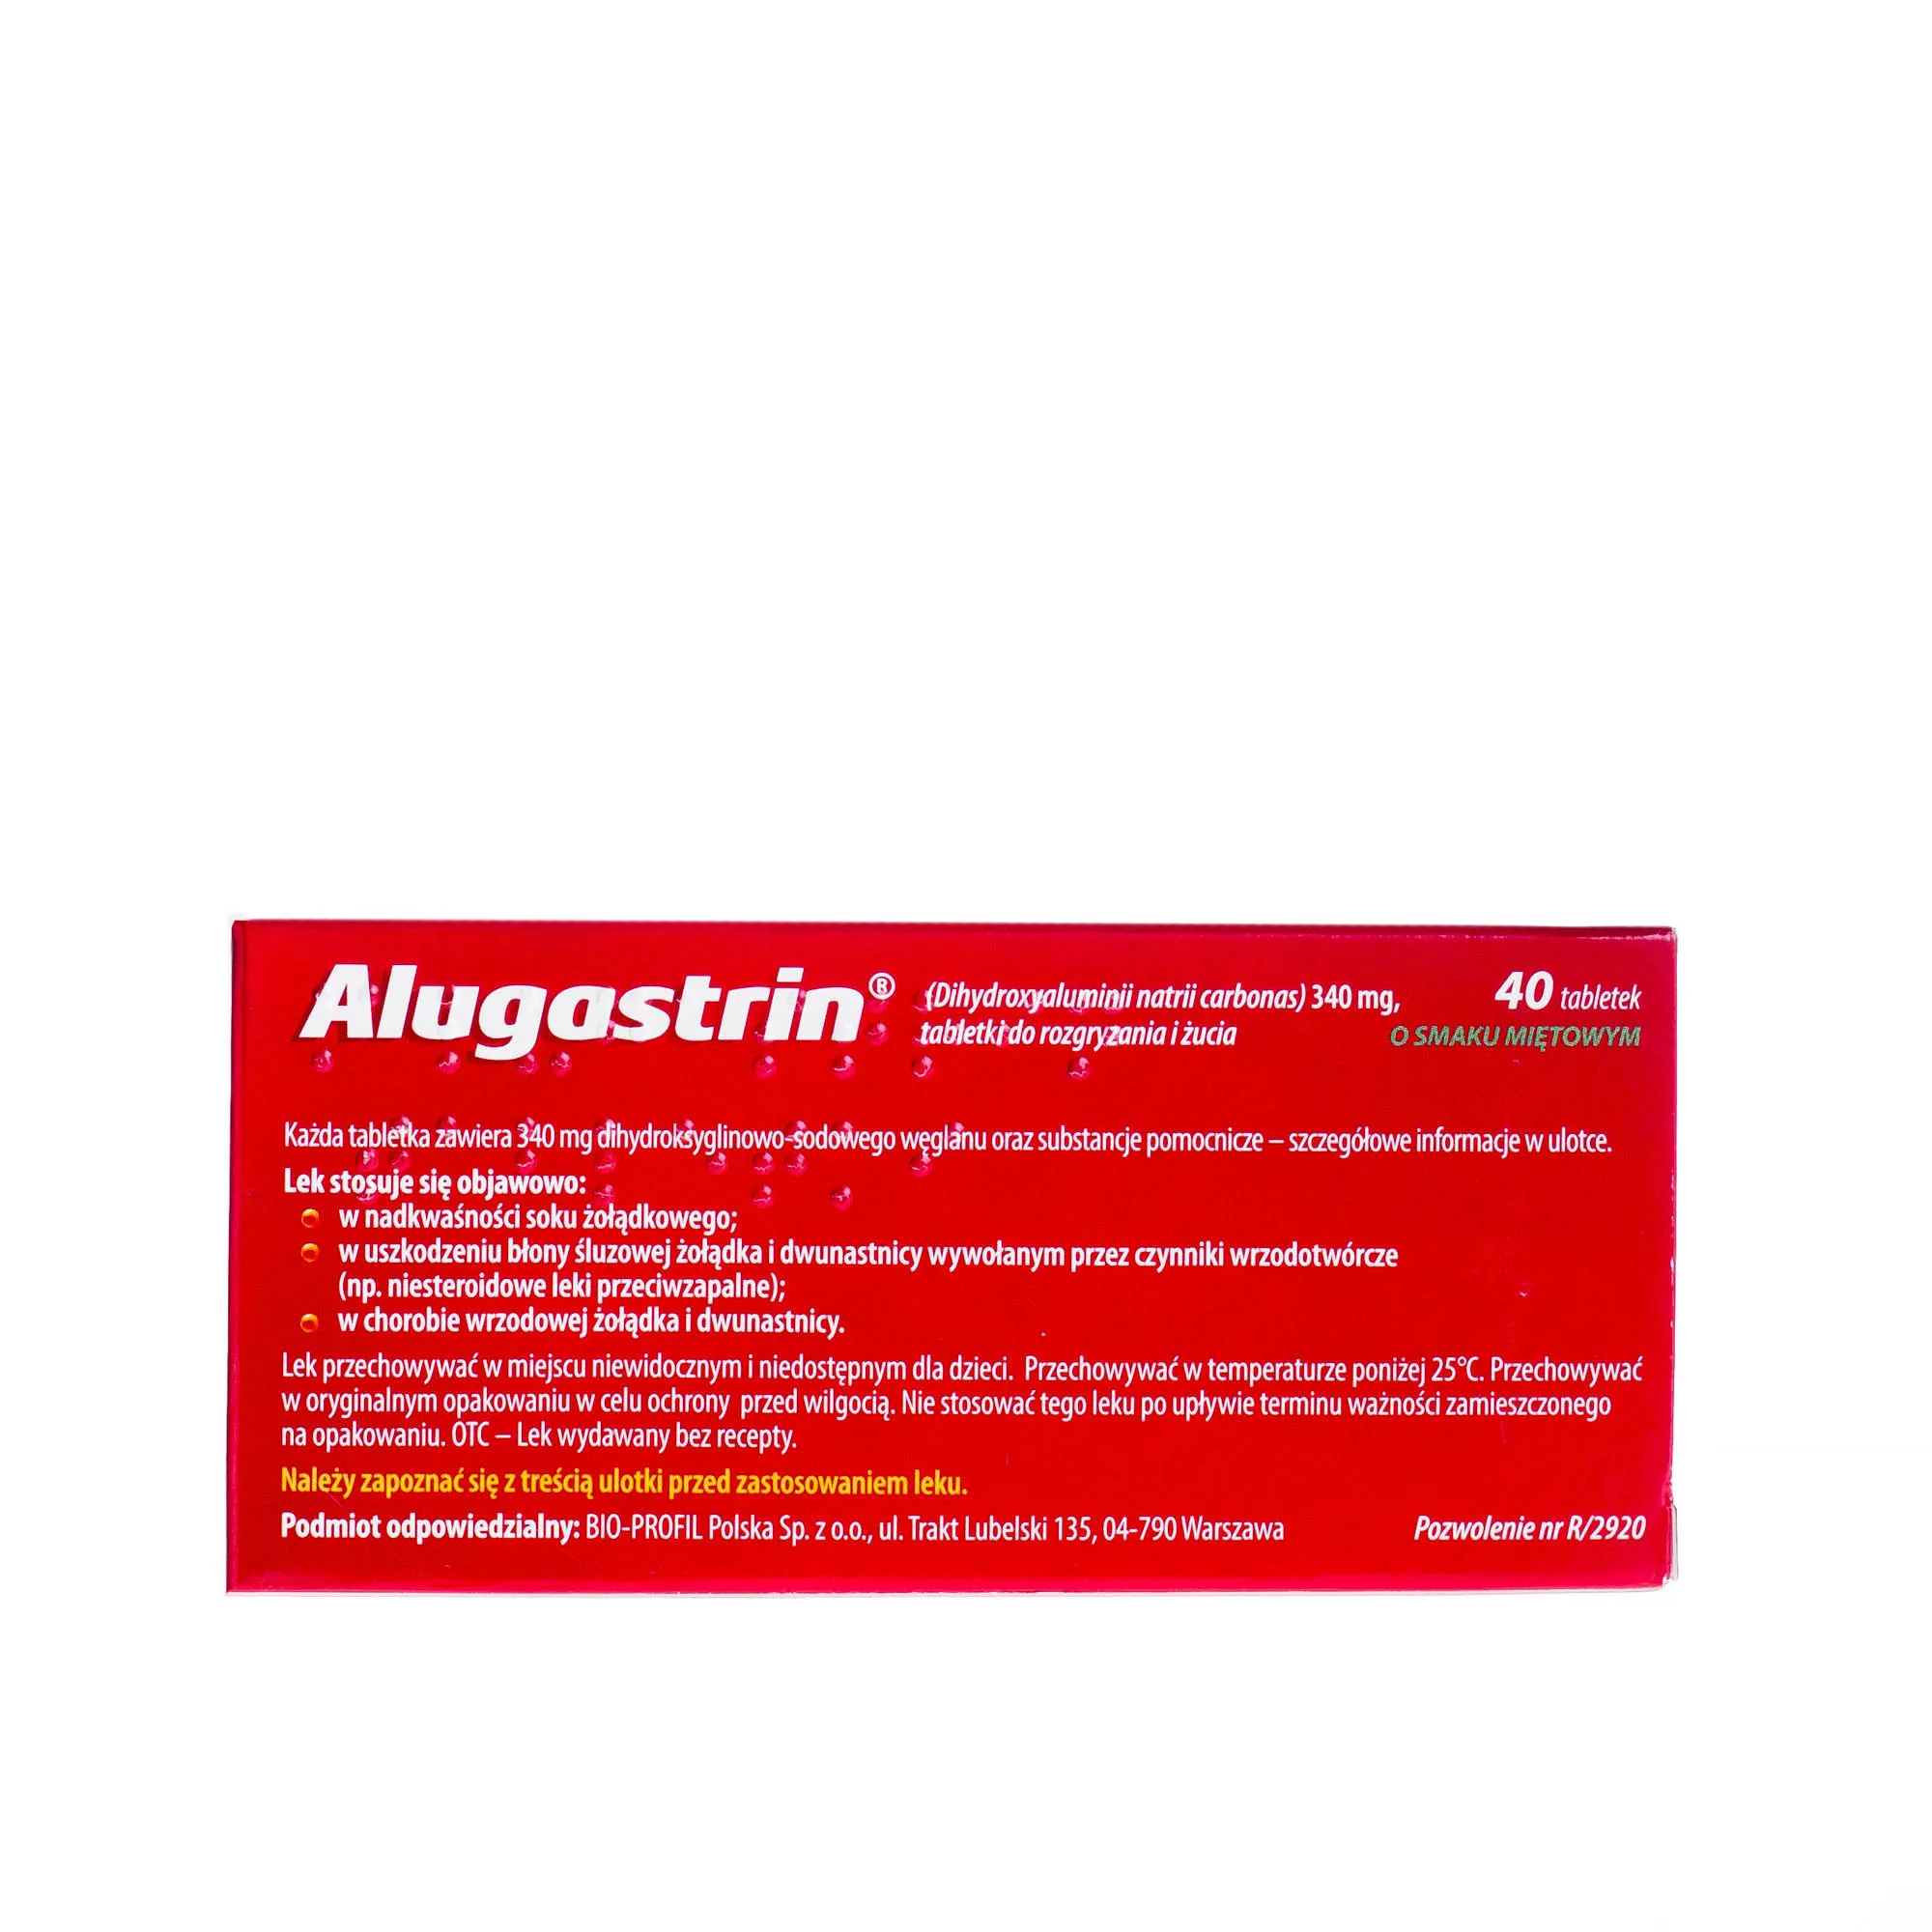 Alugastrin , 40 tabletek o smaku miętowym do rozgryzania i żucia 